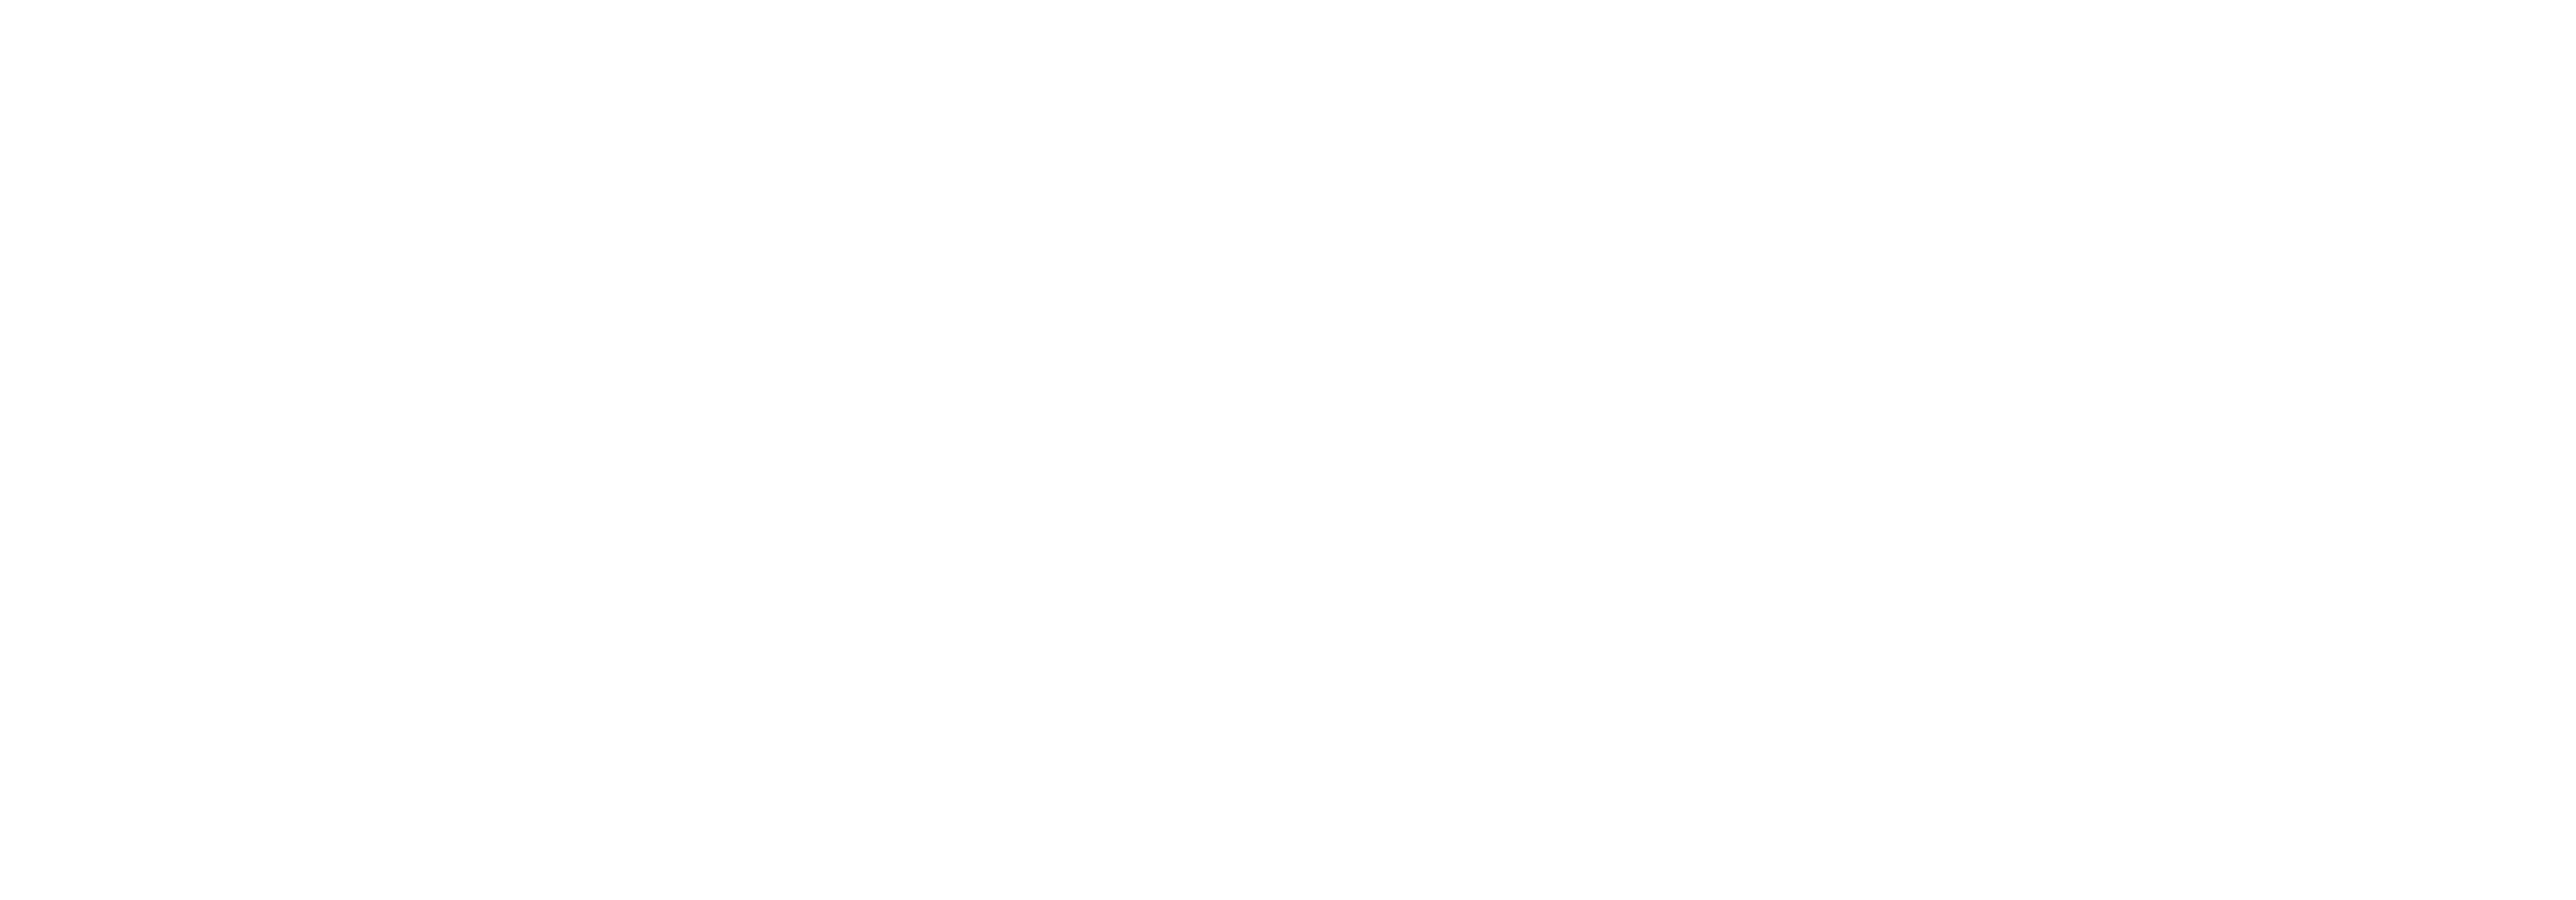 Alma Cerretta Photography and Events